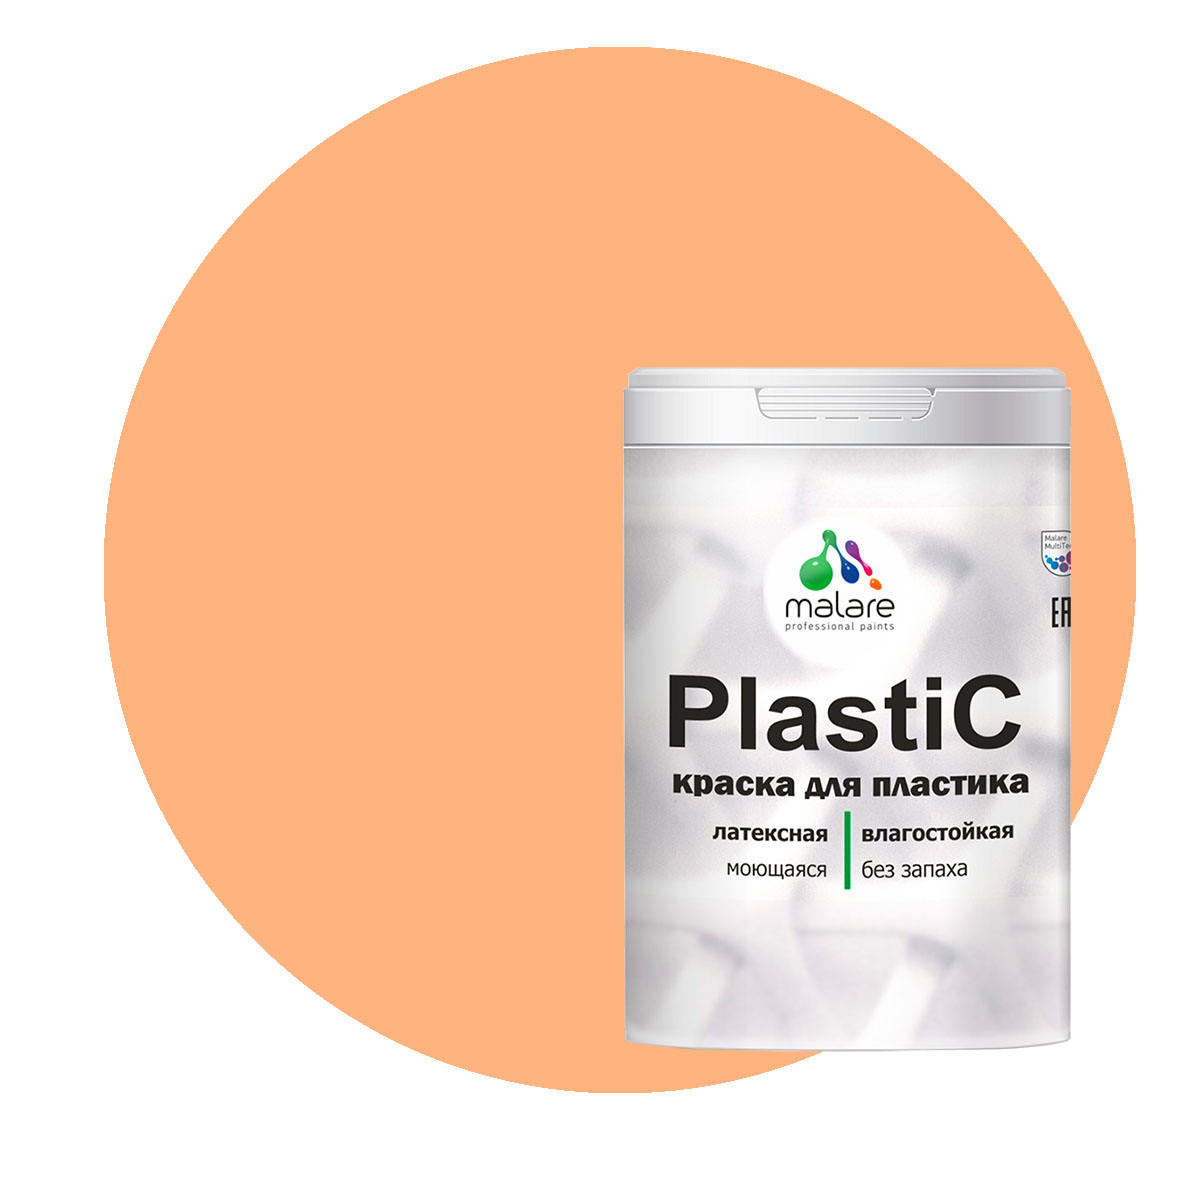 Краска Malare PlastiC для пластика, ПВХ, для сайдинга, свежая охра, 2 кг. краска malare plastic для пластика пвх для сайдинга голубая ель 2 кг